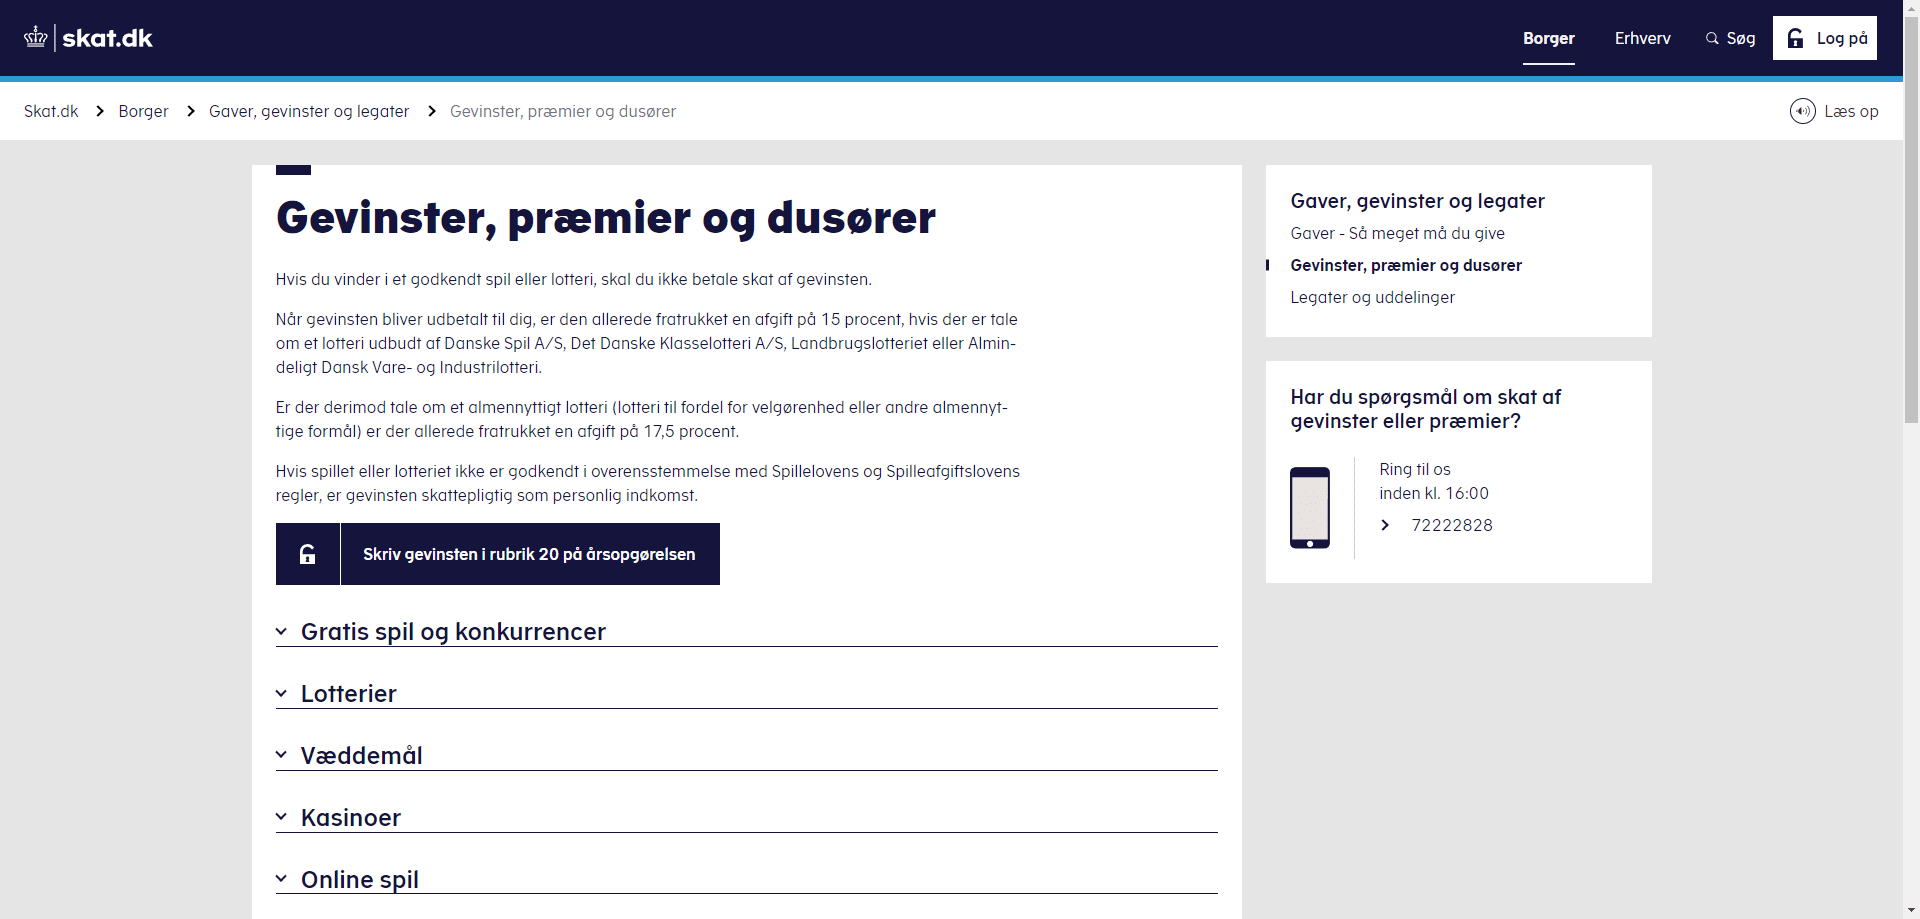 Screenshot af skat.dk sektion om 'Gevinster, præmier og dusører' med information om beskatning af gevinst fra godkendte spil og lotterier i Danmark